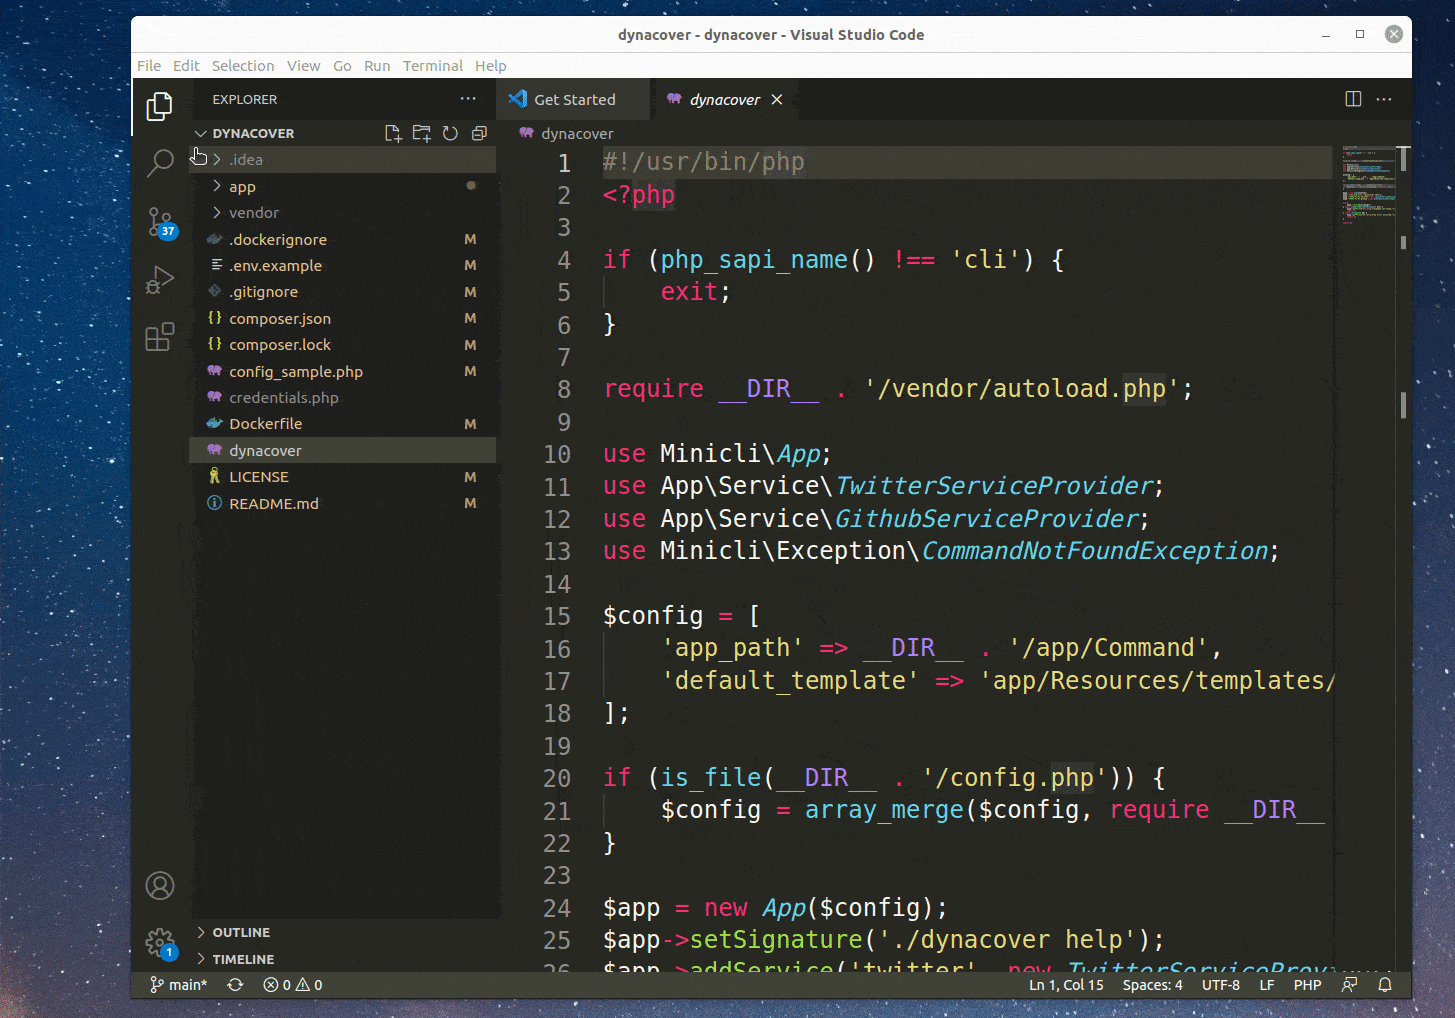 Using VS Code built-in source control tool